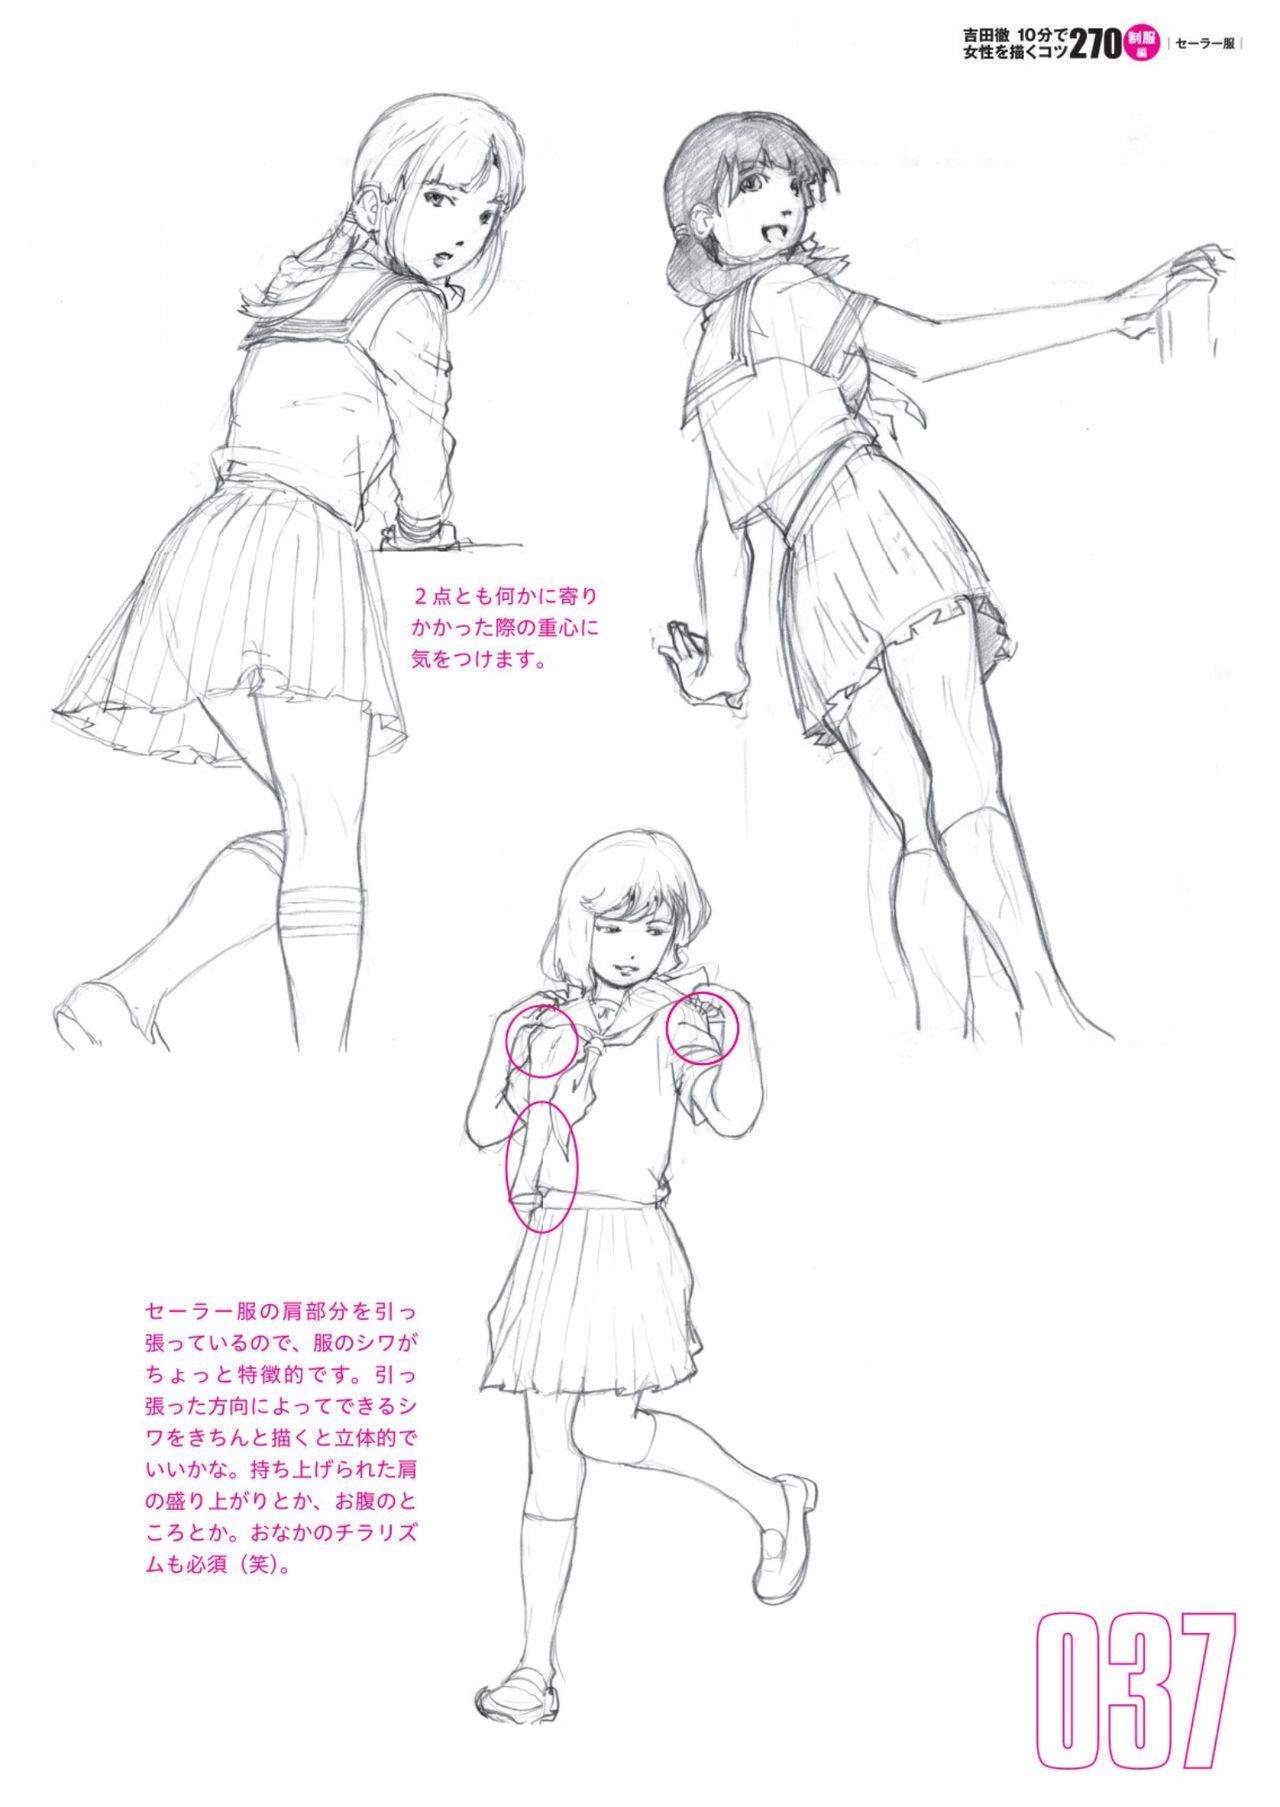 Toru Yoshida Tips for drawing women in 10 minutes 270 Uniforms 38